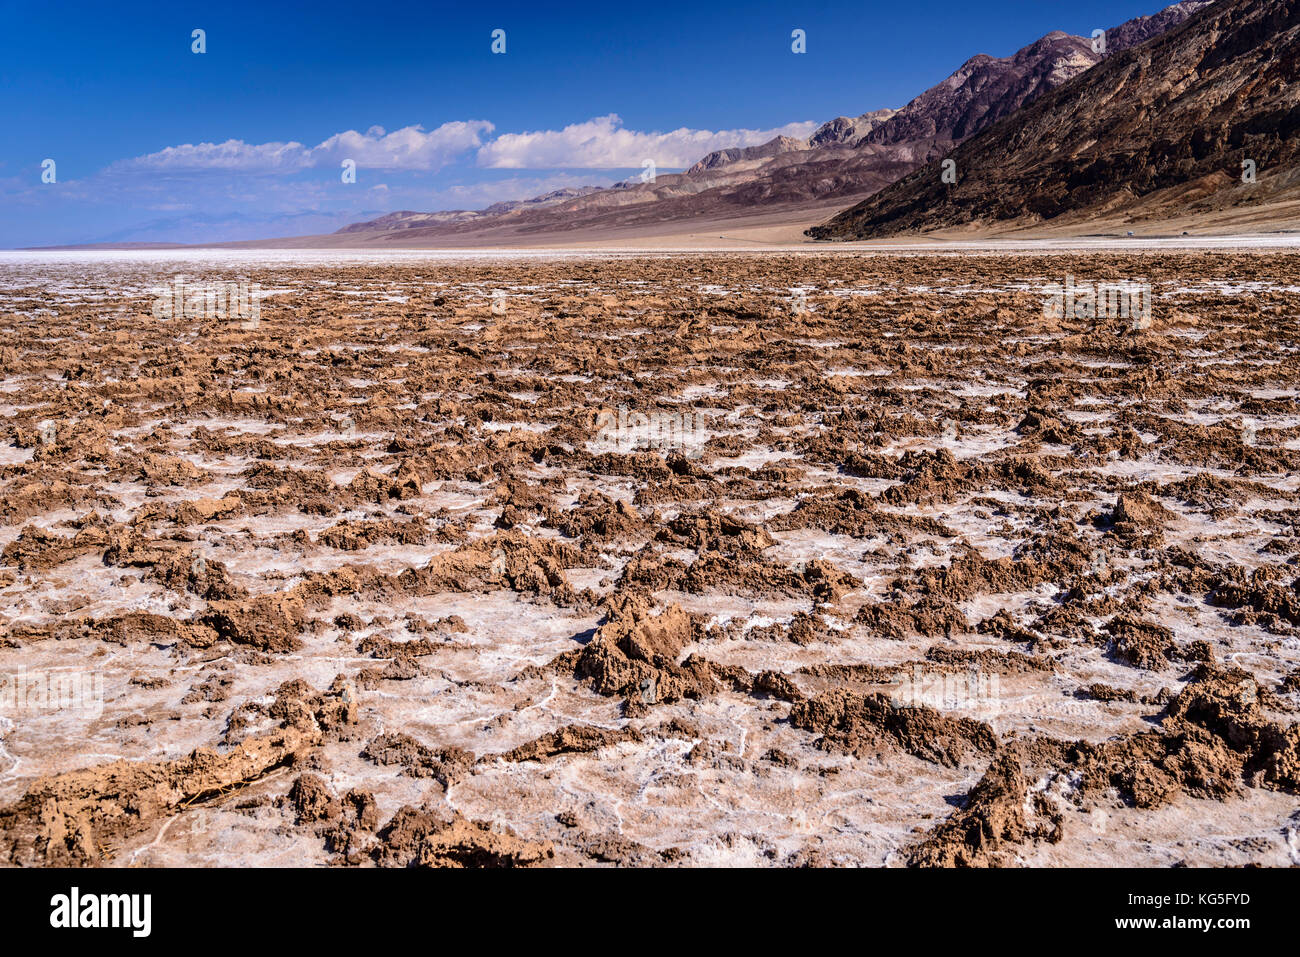 Les usa, Californie, Death Valley National Park, bassin de badwater, sel avec structures vers badwater amargosa range Banque D'Images